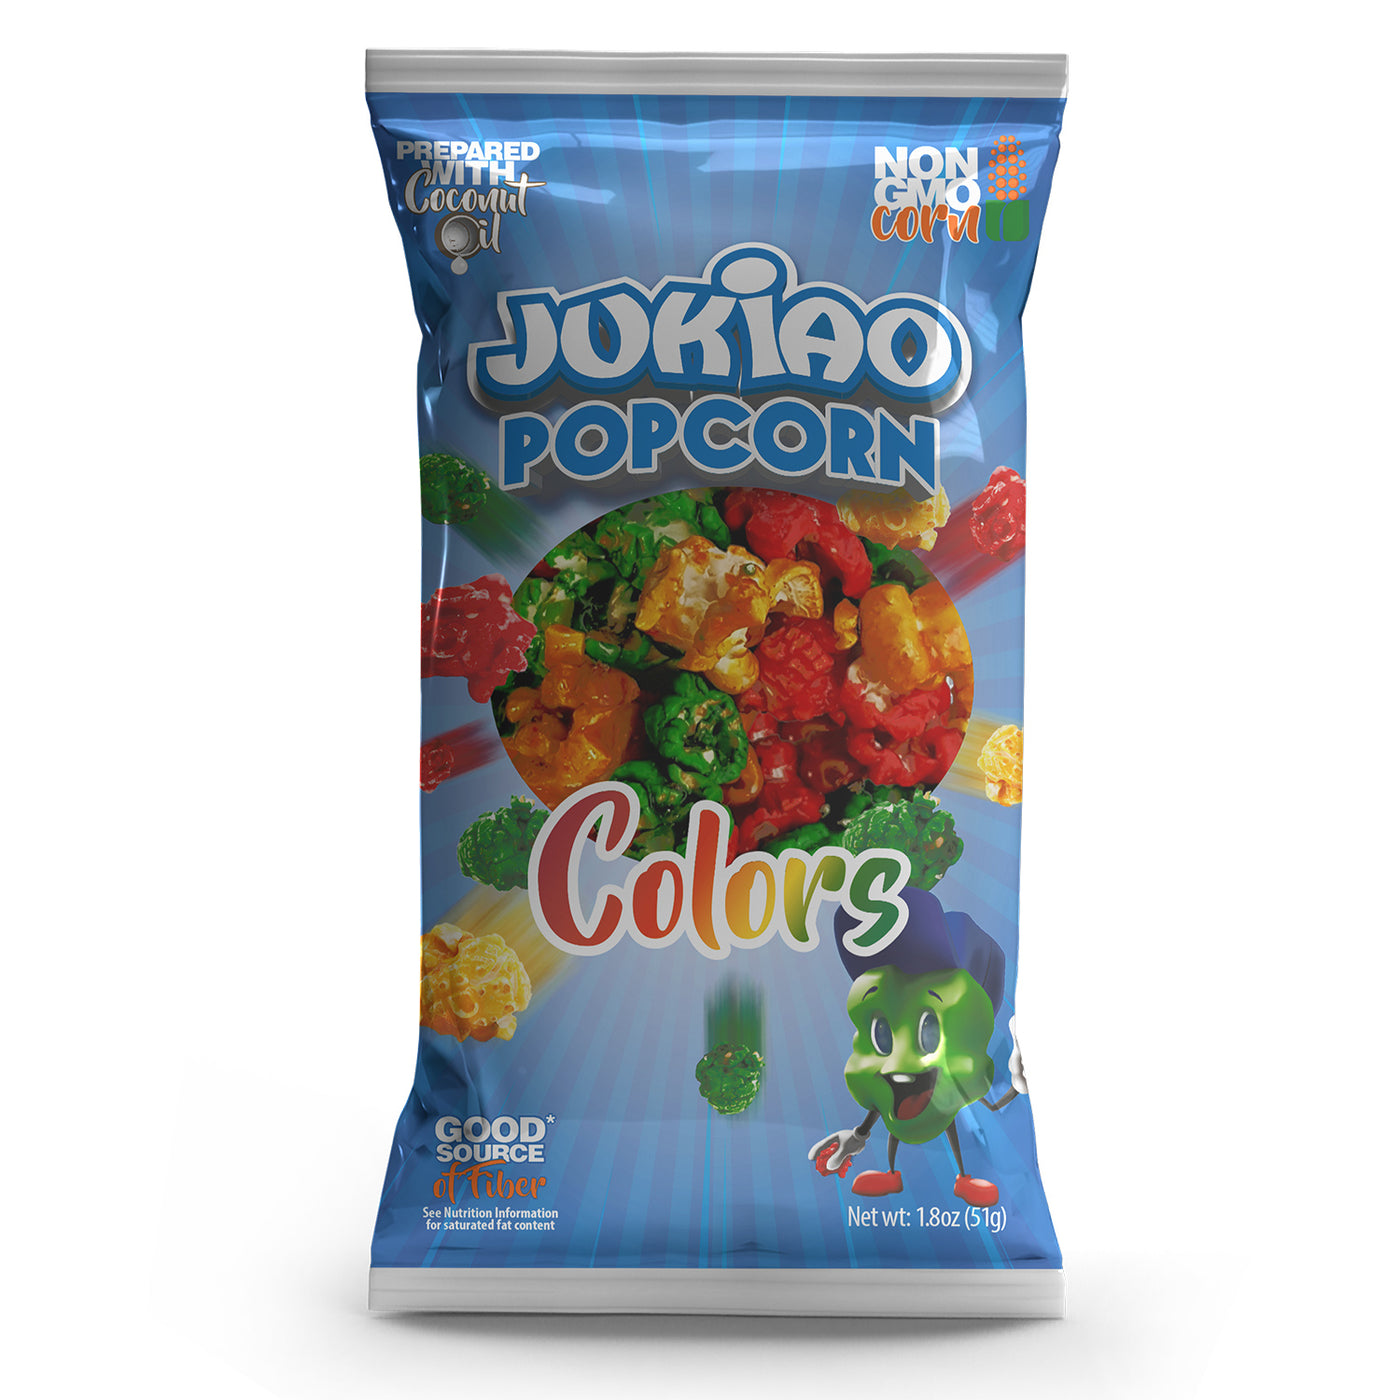 Jukiao PopCorn de Colores 1.8oz